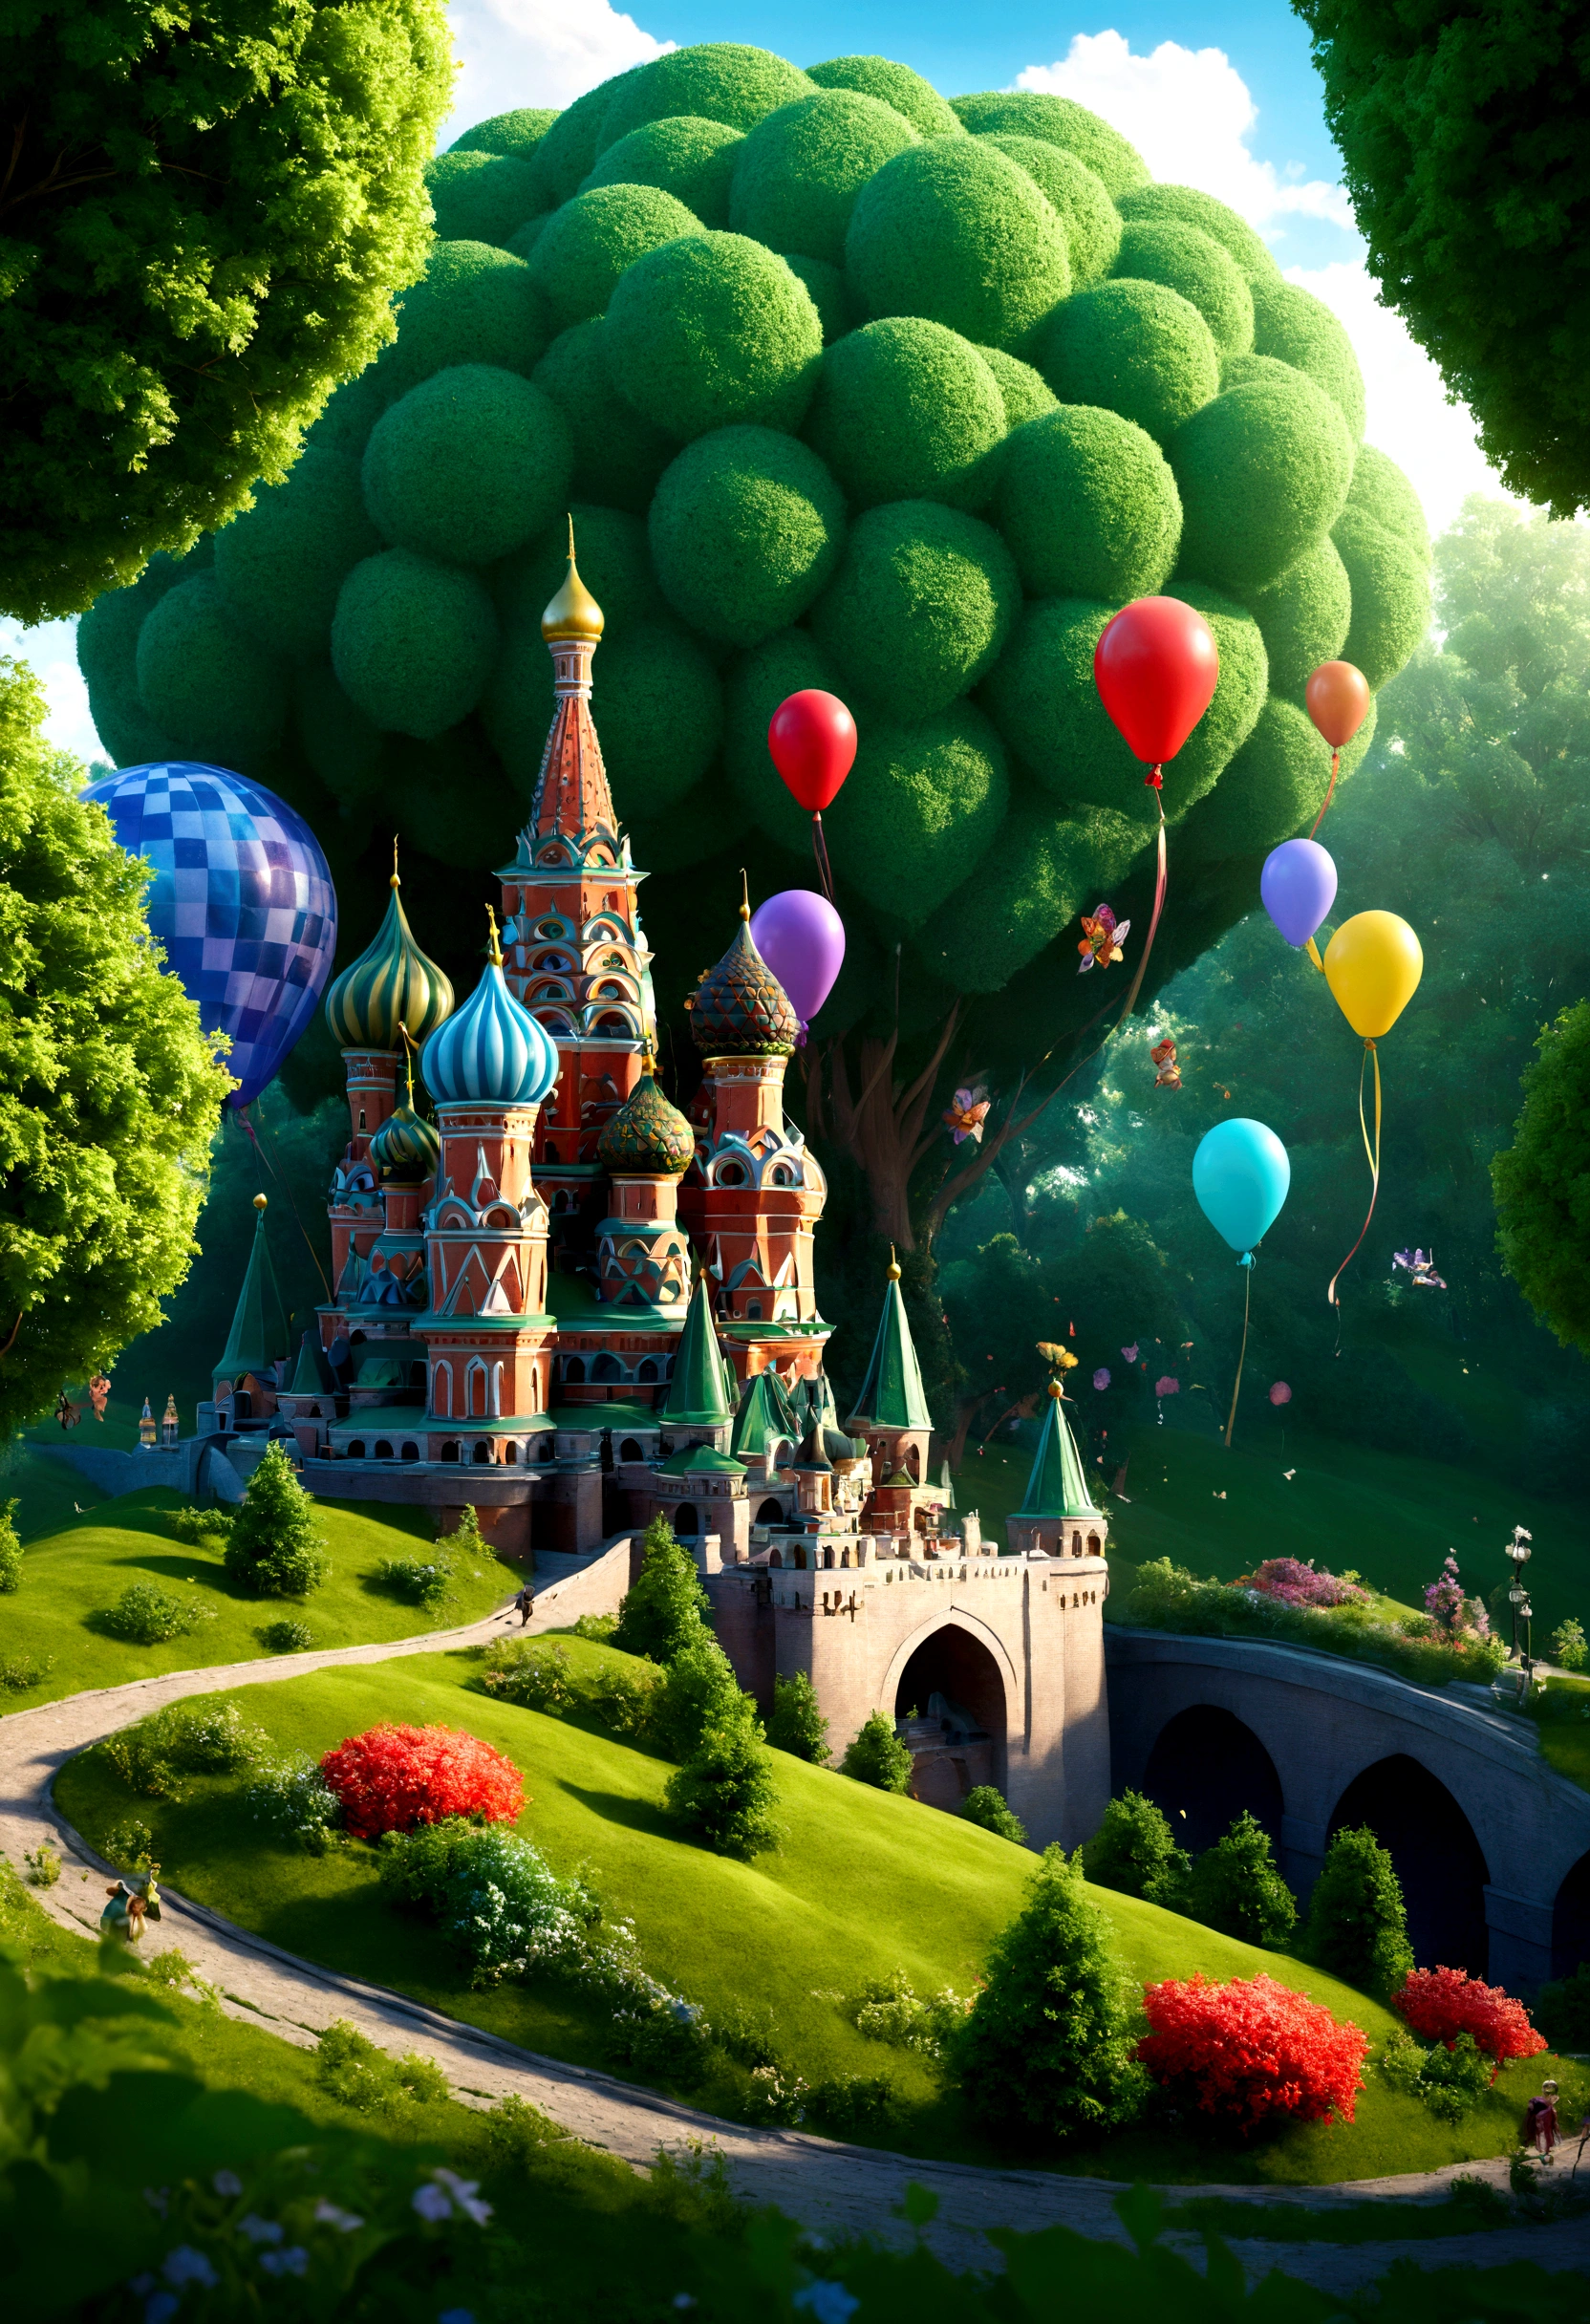 놀라운 입체 이미지, 피사계 심도 f0.95, a small fairy-tale world imitating fairy-tale Moscow among 마법 같은 green fairy-tale trees and bright 마법 같은 flowers, 동화 세계는 세부 사항과 동화 세계를 갖춘 작은 모스크바처럼 보입니다., 이 작은 동화 모스크바에서는 다채로운 풍선이 날아가고 축하와 마법의 분위기가 지배합니다., 현실적인, 마법 같은, 상세히